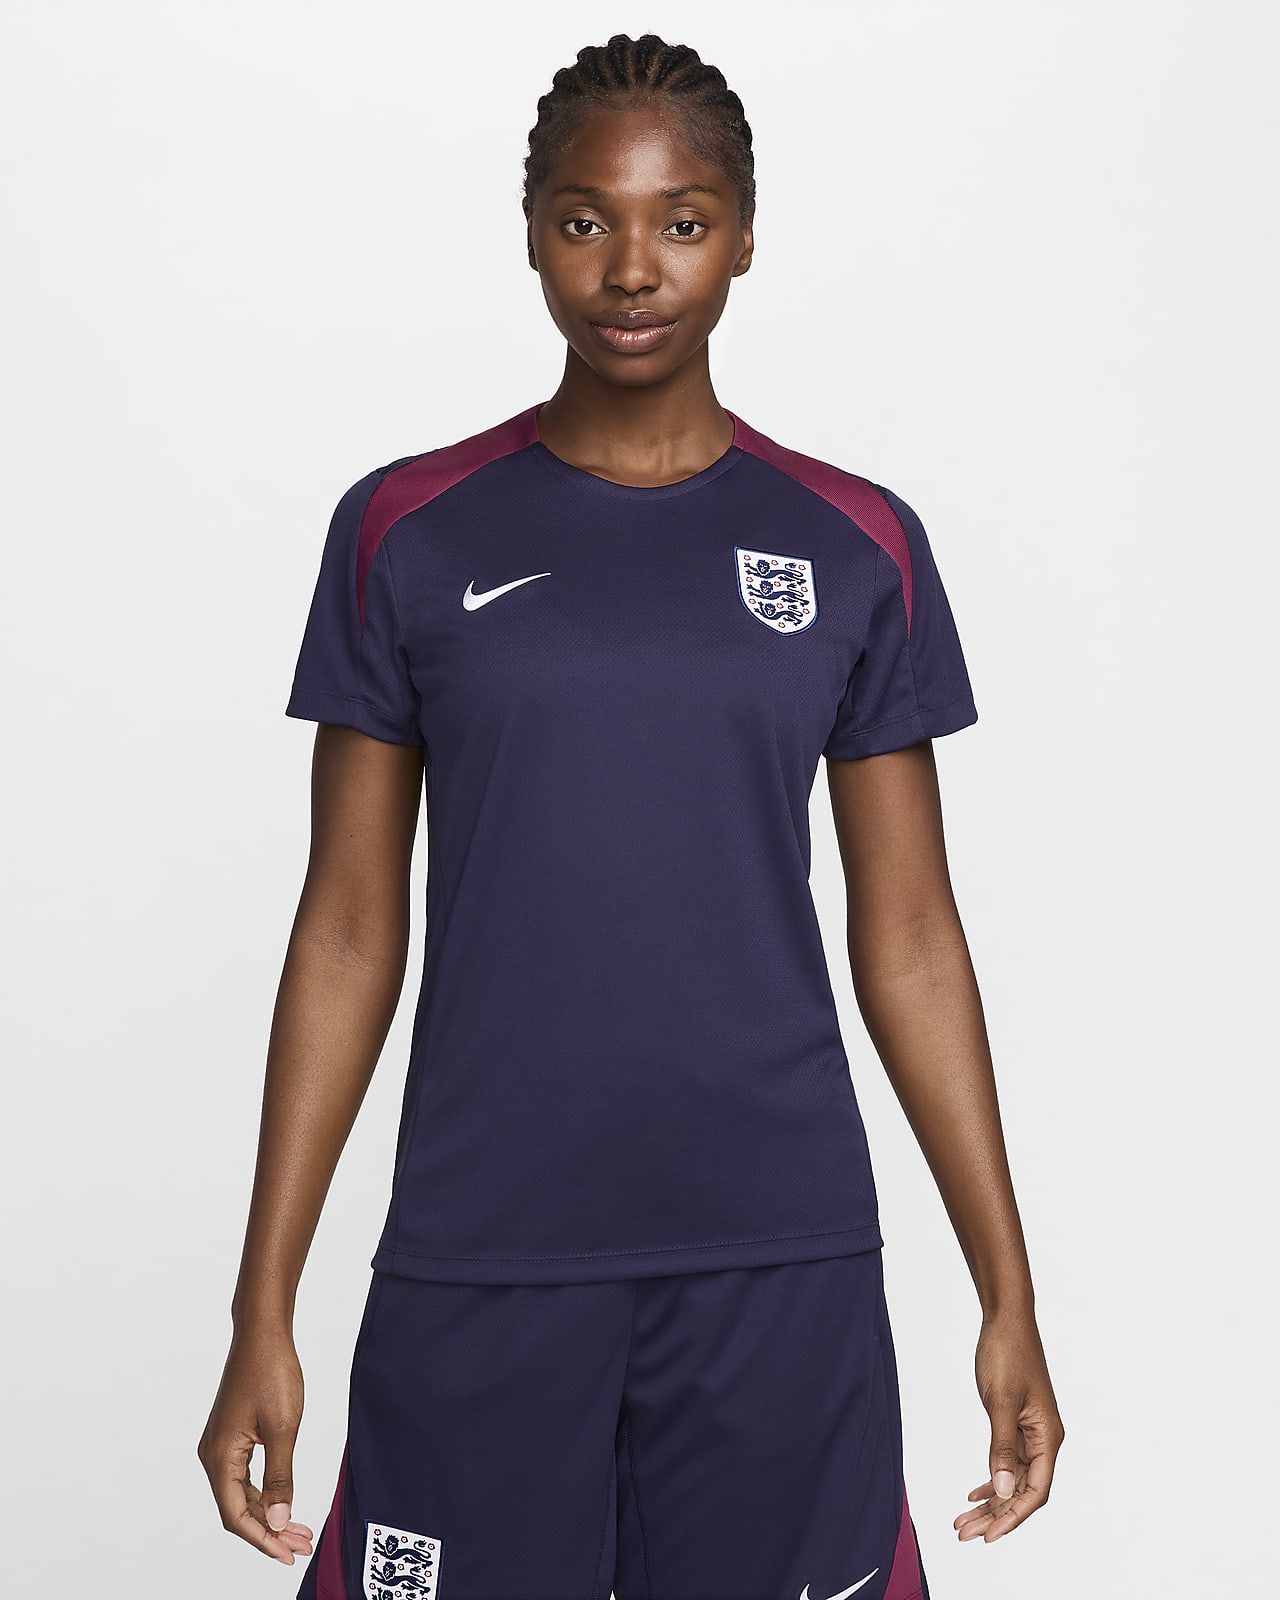 Engeland Strike Nike Dri-FIT knit voetbaltop met korte mouwen voor dames